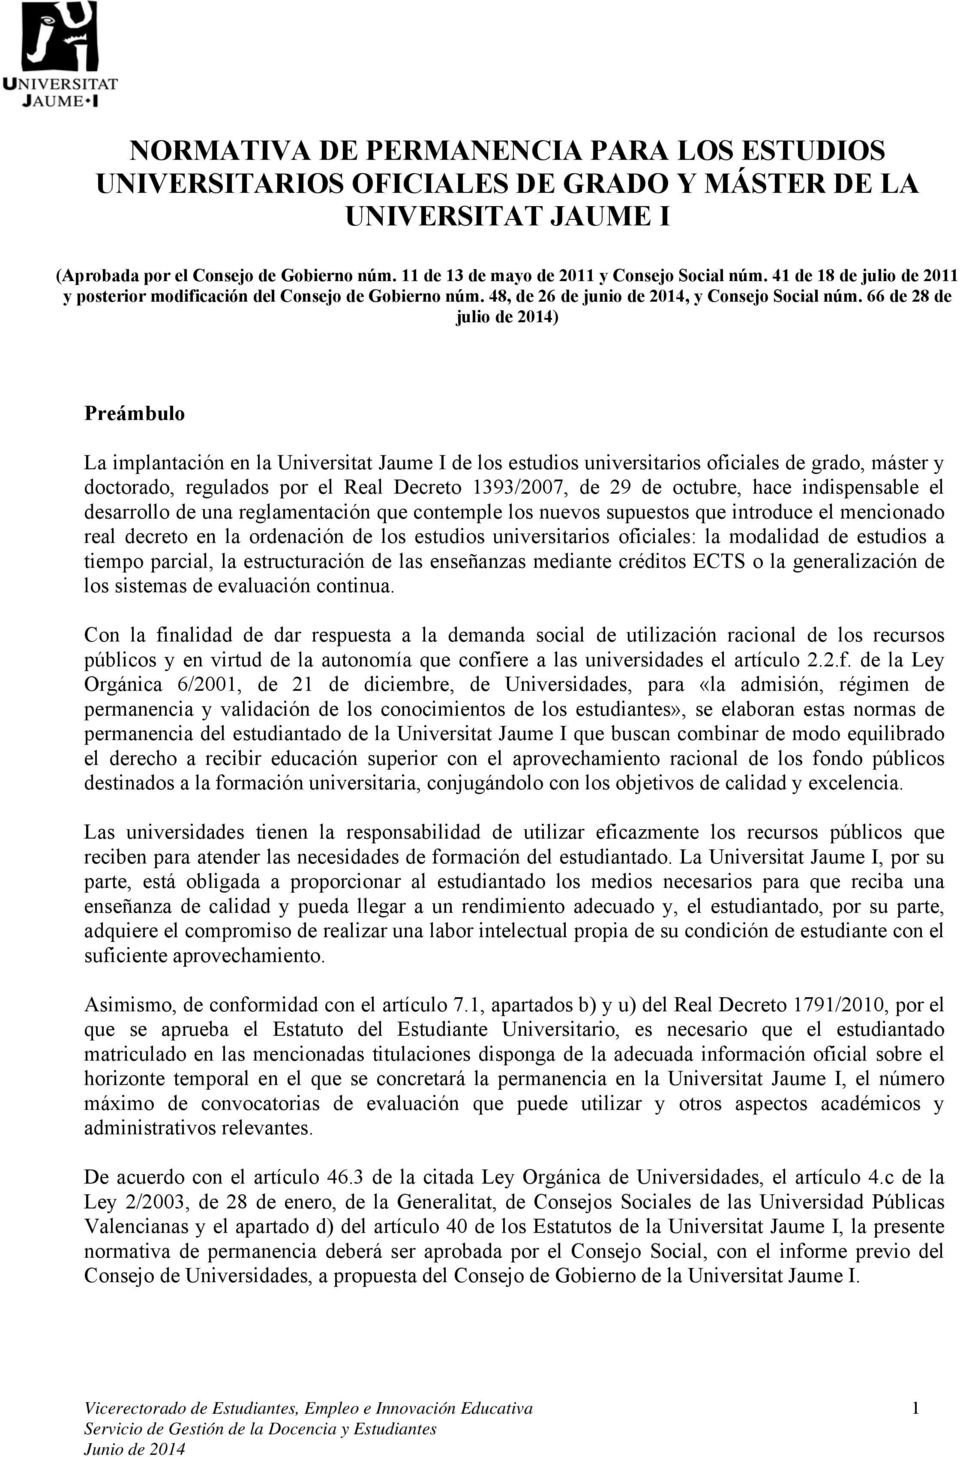 66 de 28 de julio de 2014) Preámbulo La implantación en la Universitat Jaume I de los estudios universitarios oficiales de grado, máster y doctorado, regulados por el Real Decreto 1393/2007, de 29 de